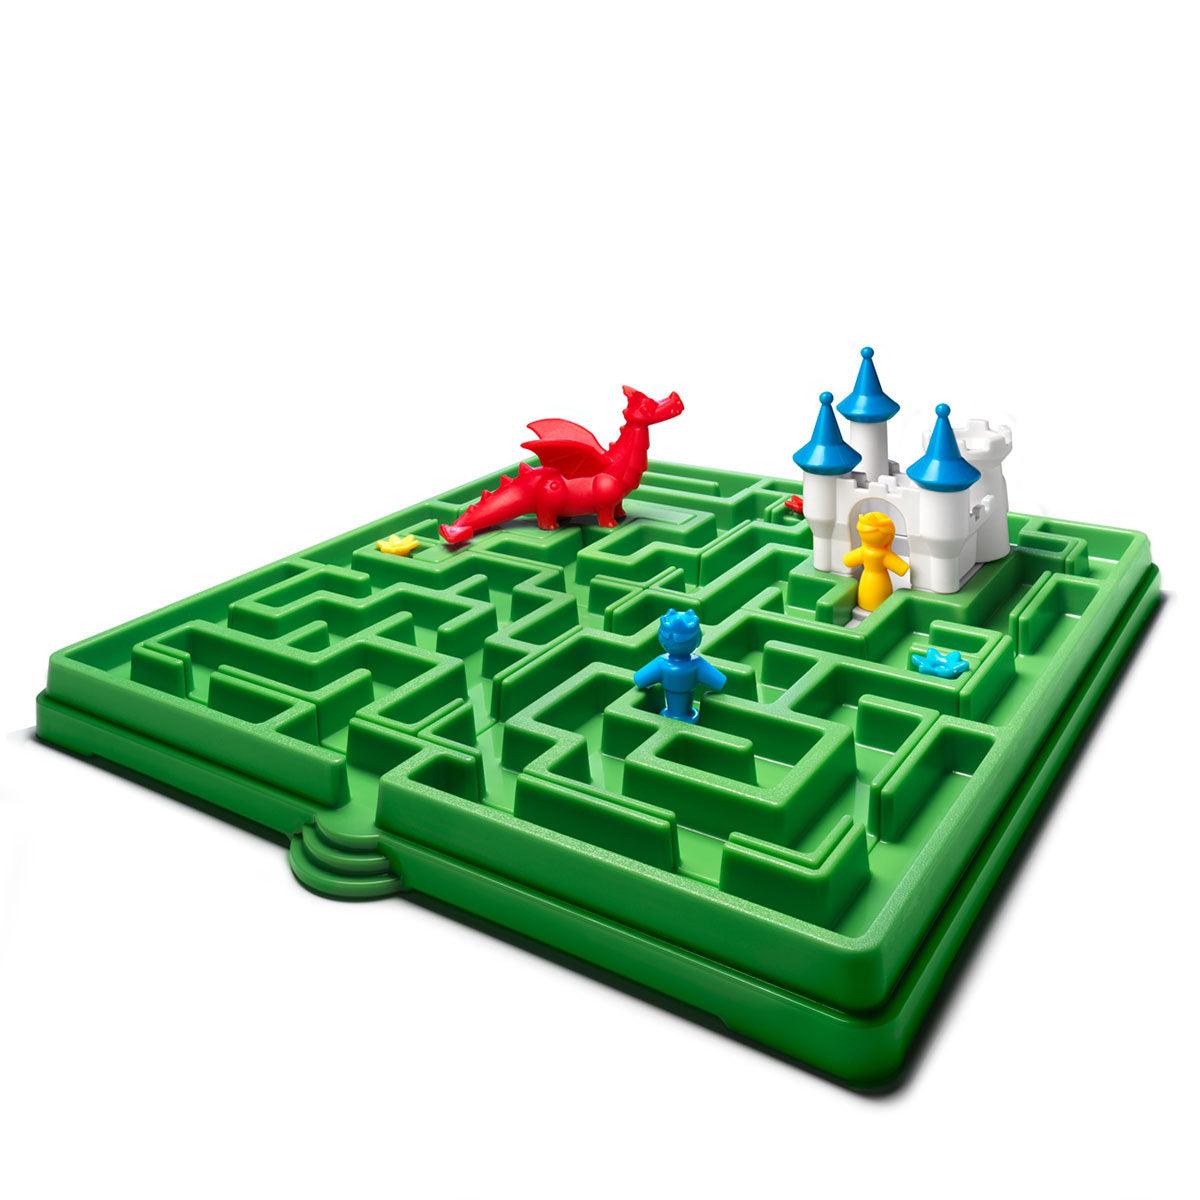 Gra logiczna Śpiąca Królewna Smart Games - 60 wyzwań dla dzieci 3-7 lat,  zamek, rycerz, smok, książka obrazkowa i labirynty - IUVI Games